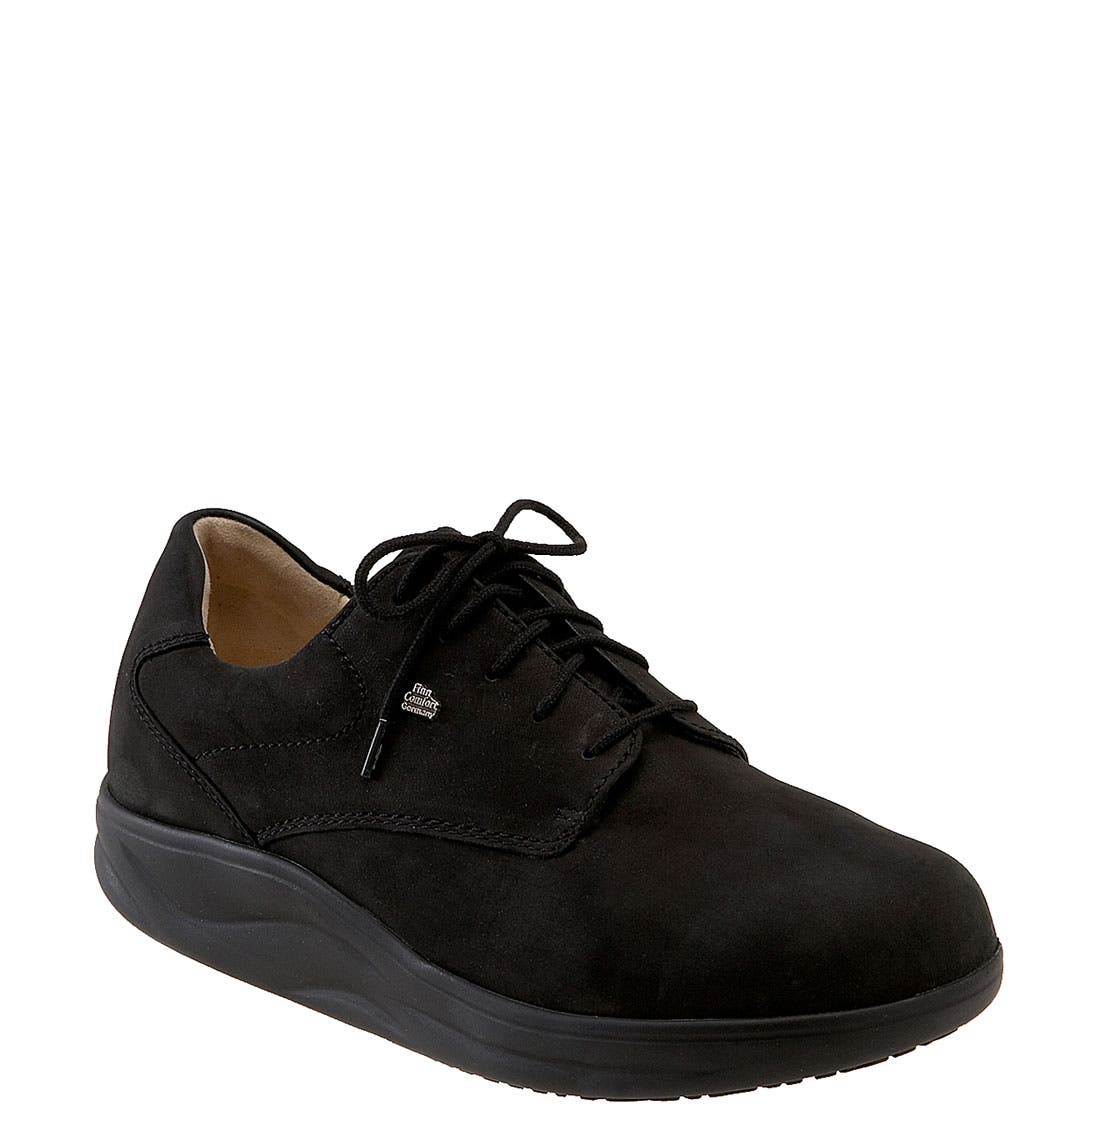 finn comfort rocker shoes